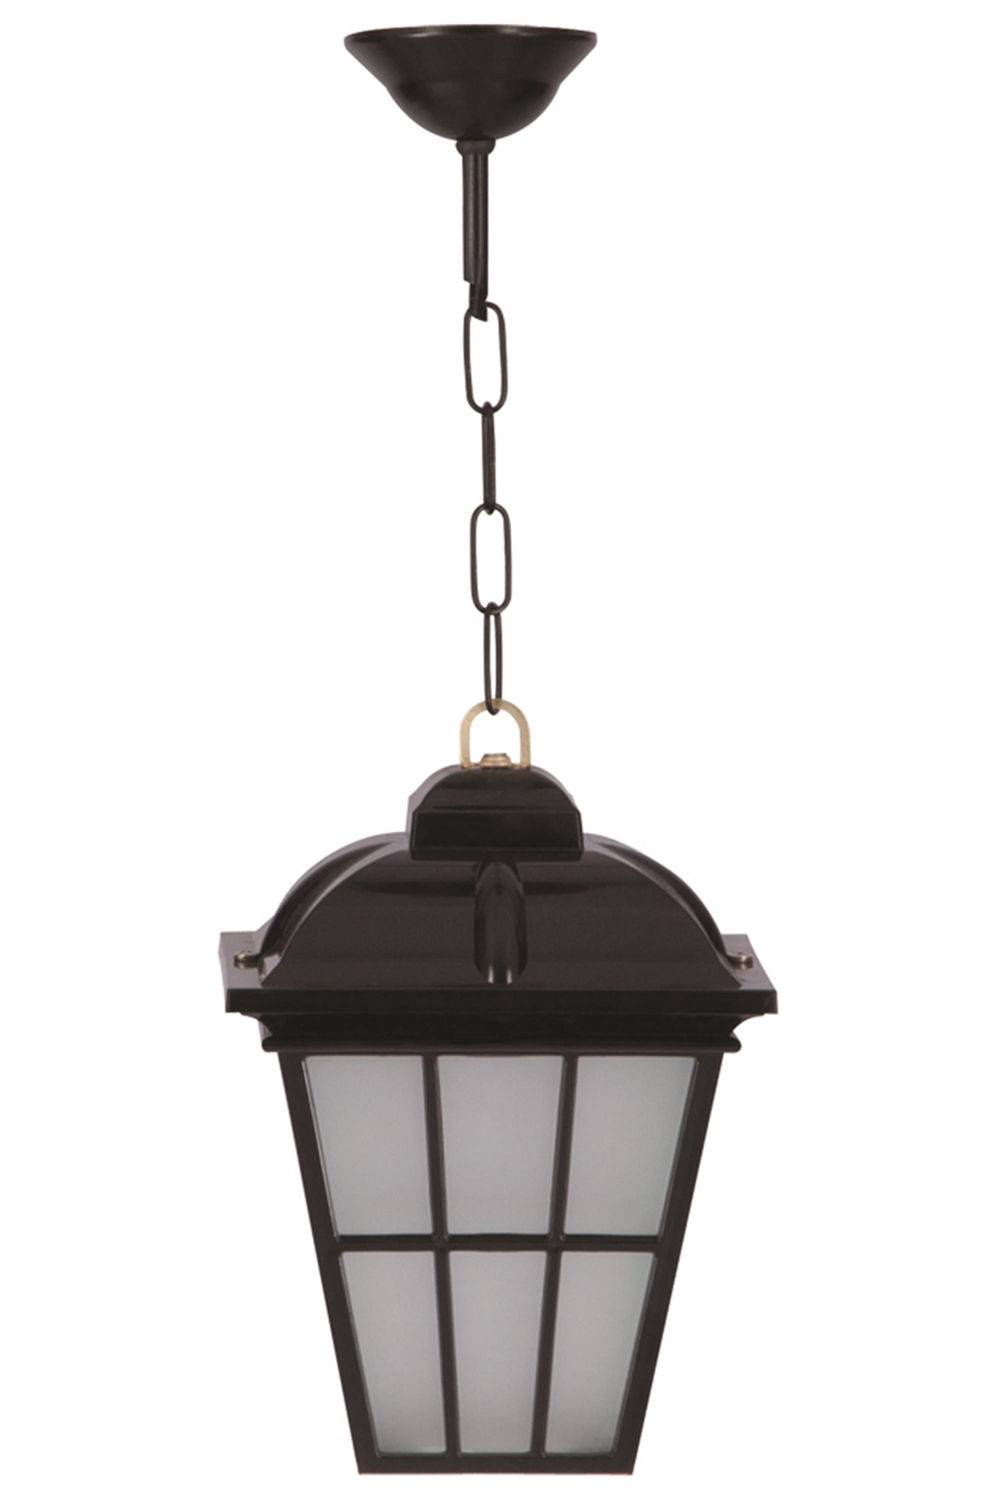 Denis Buiten hanglamp 55cm Zwart